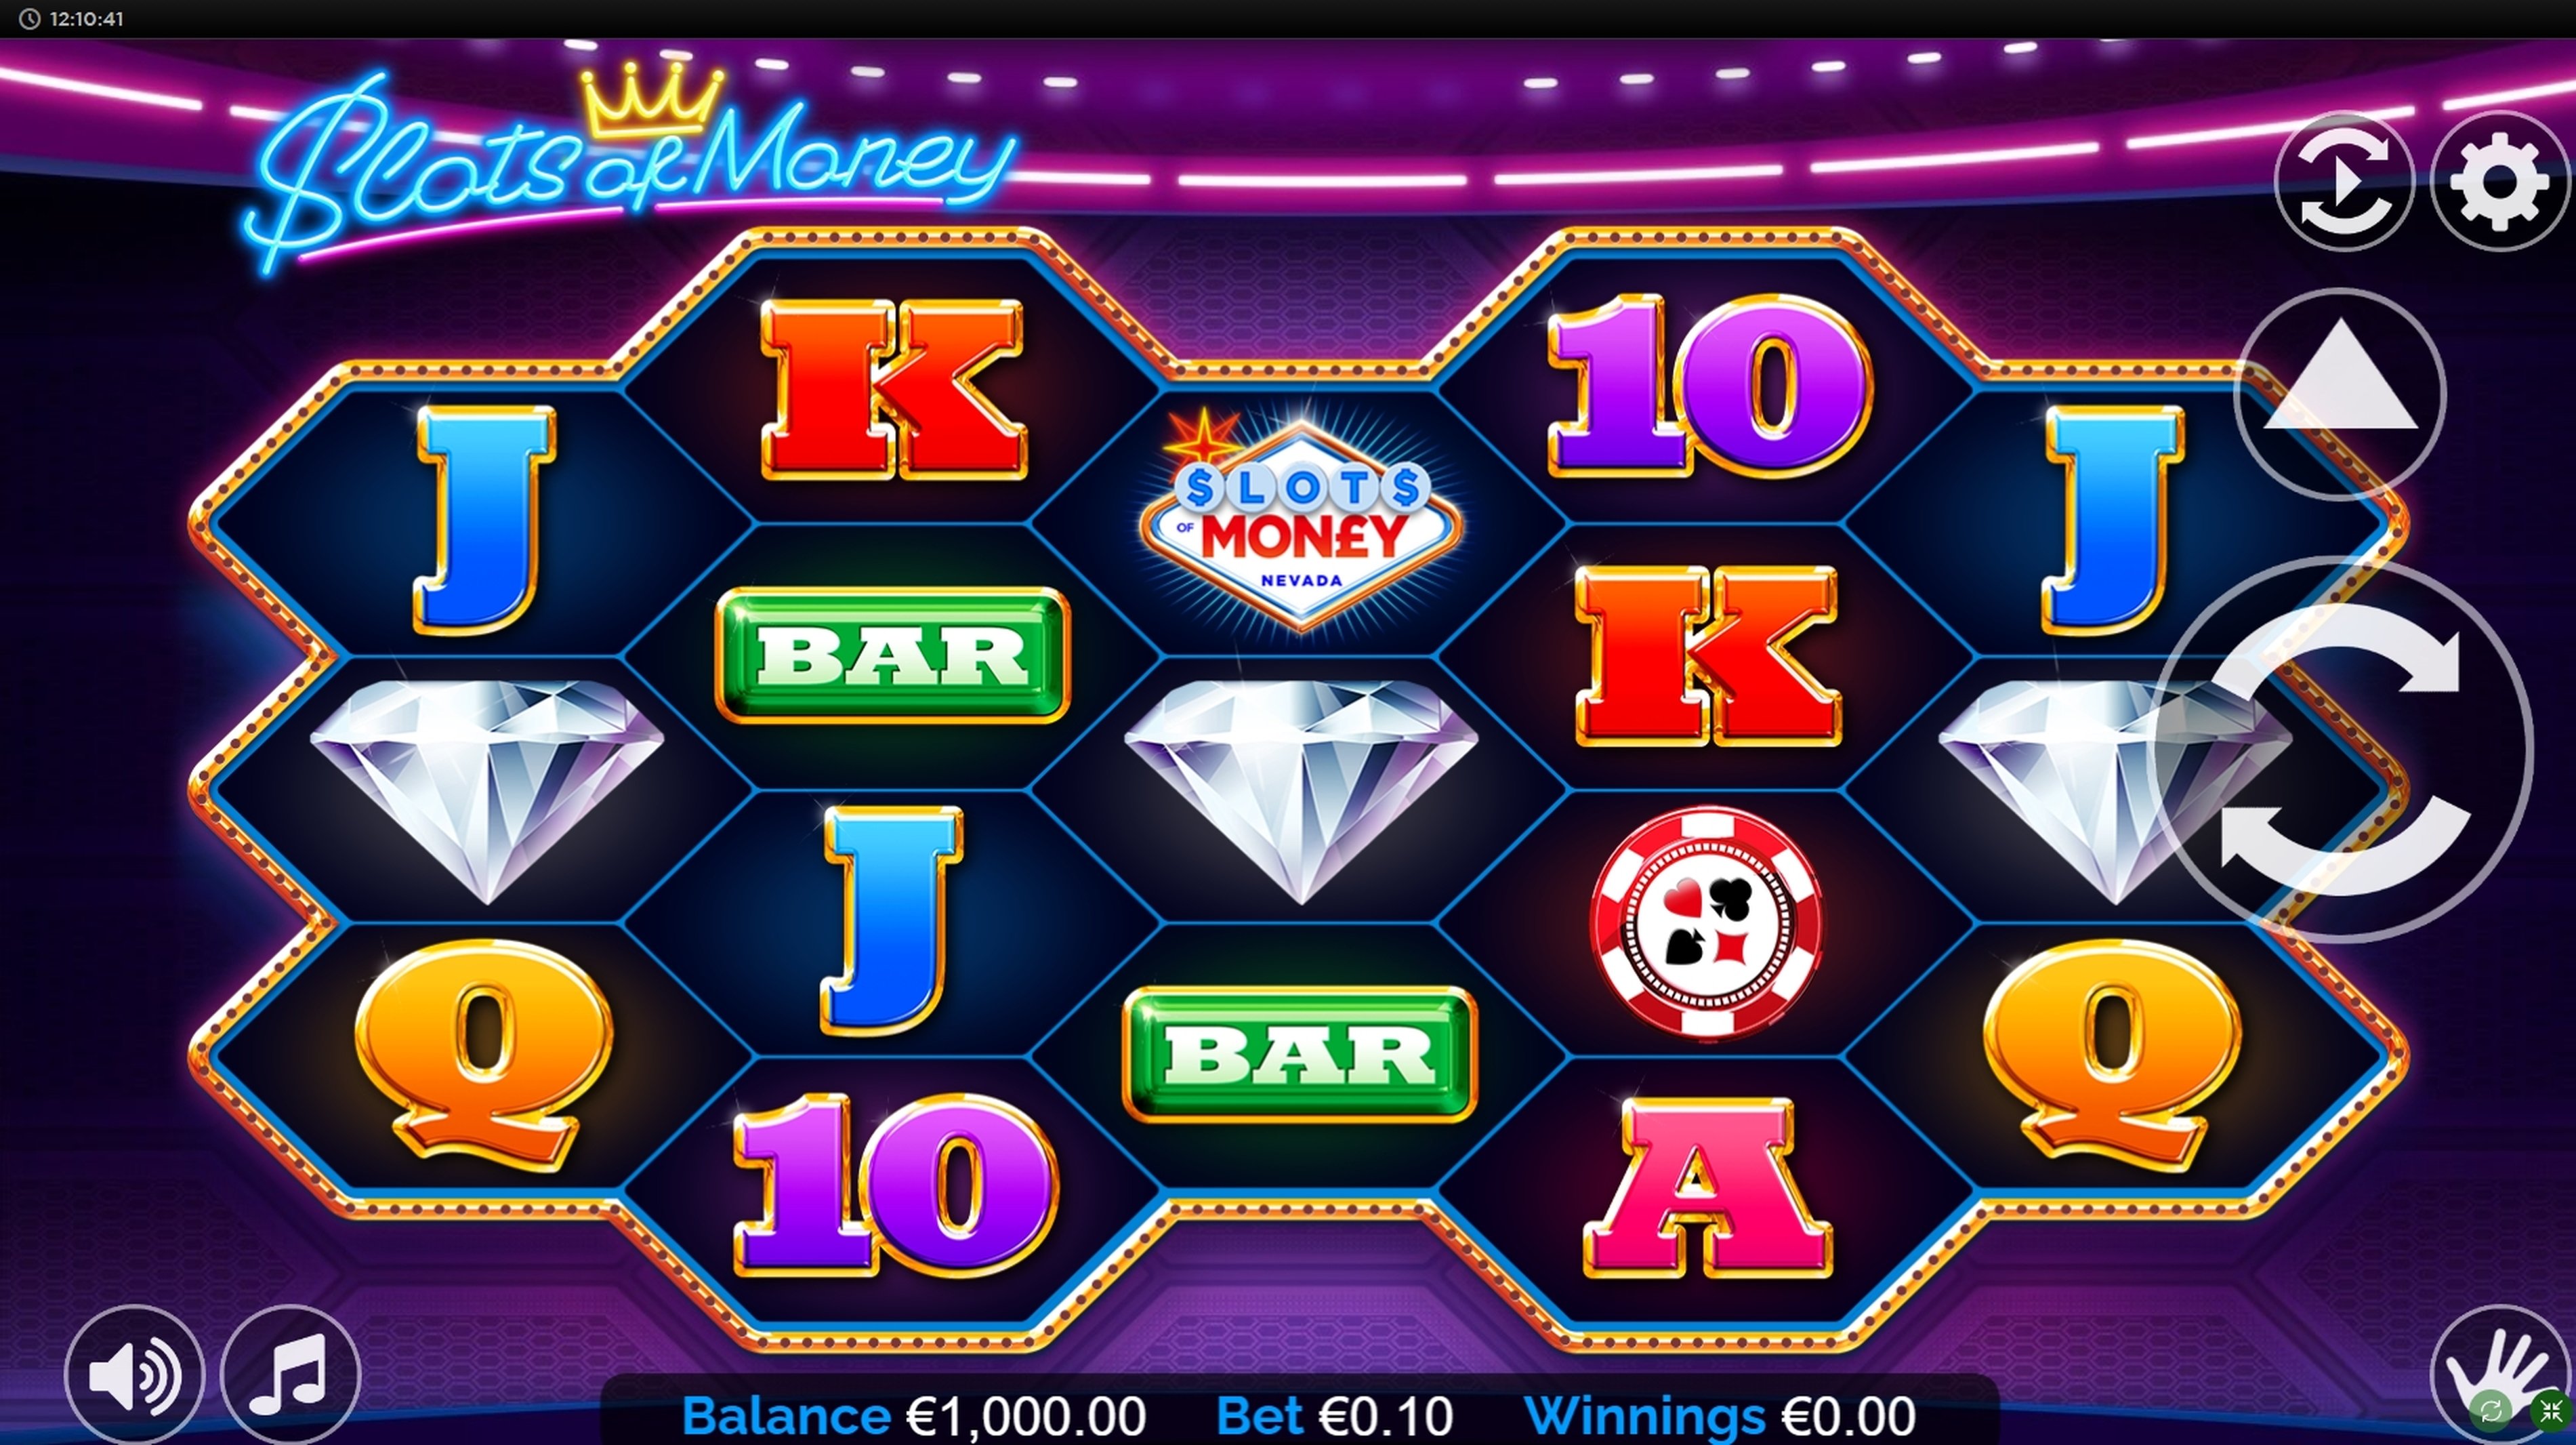 Reels in Slots of Money Slot Game by Betdigital